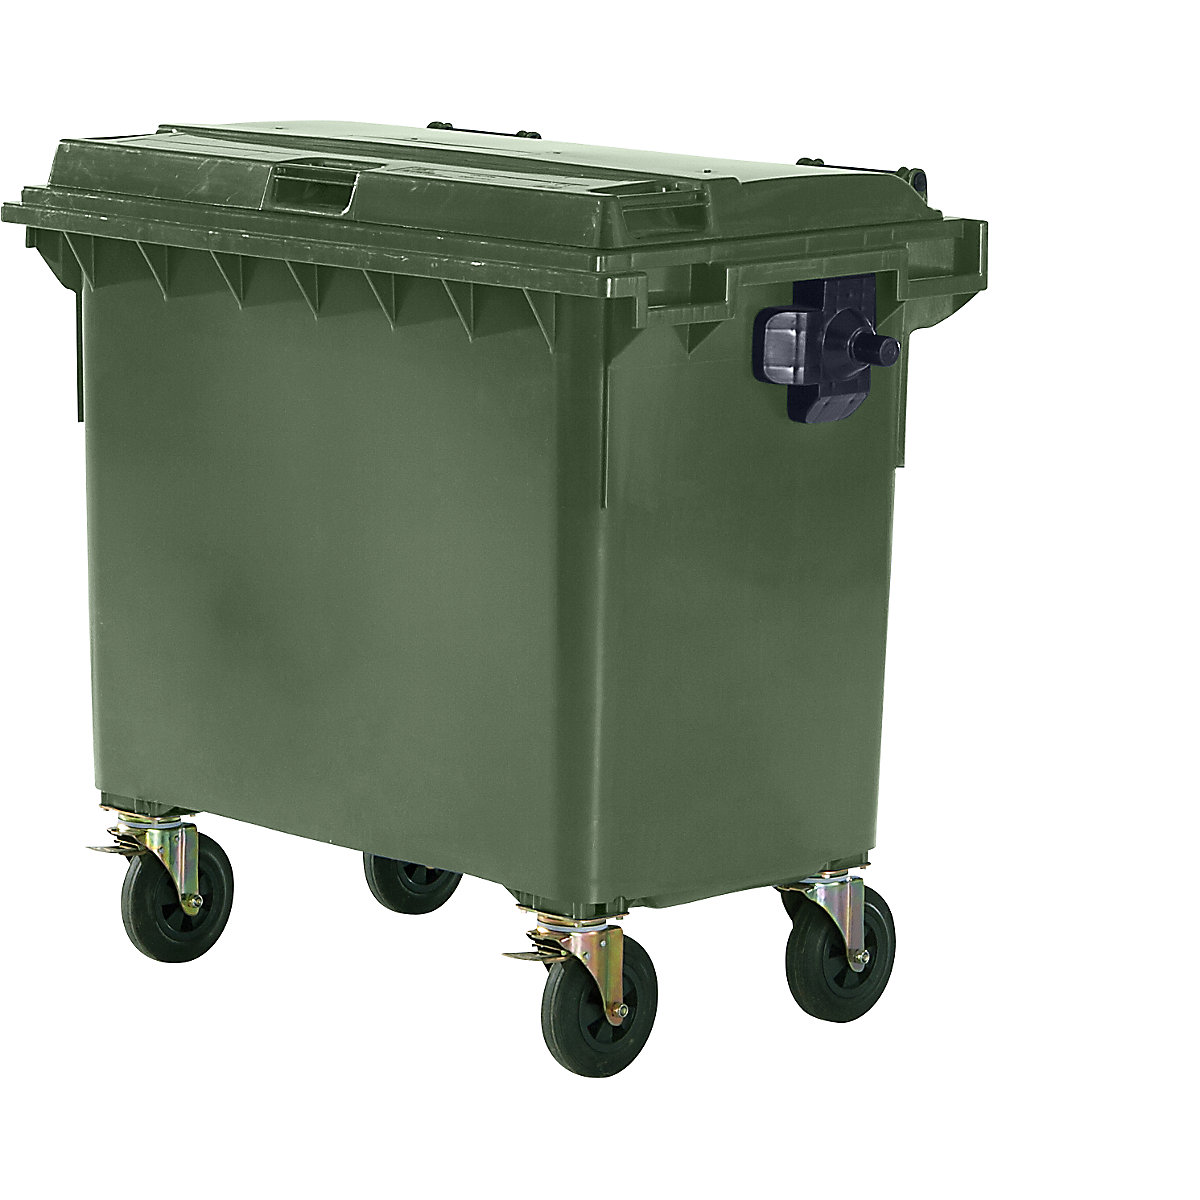 Container per rifiuti in plastica, DIN EN 840, capacità 660 l, largh. x alt. x prof. 1360 x 1235 x 765 mm, verde, a partire da 5 pz.-3